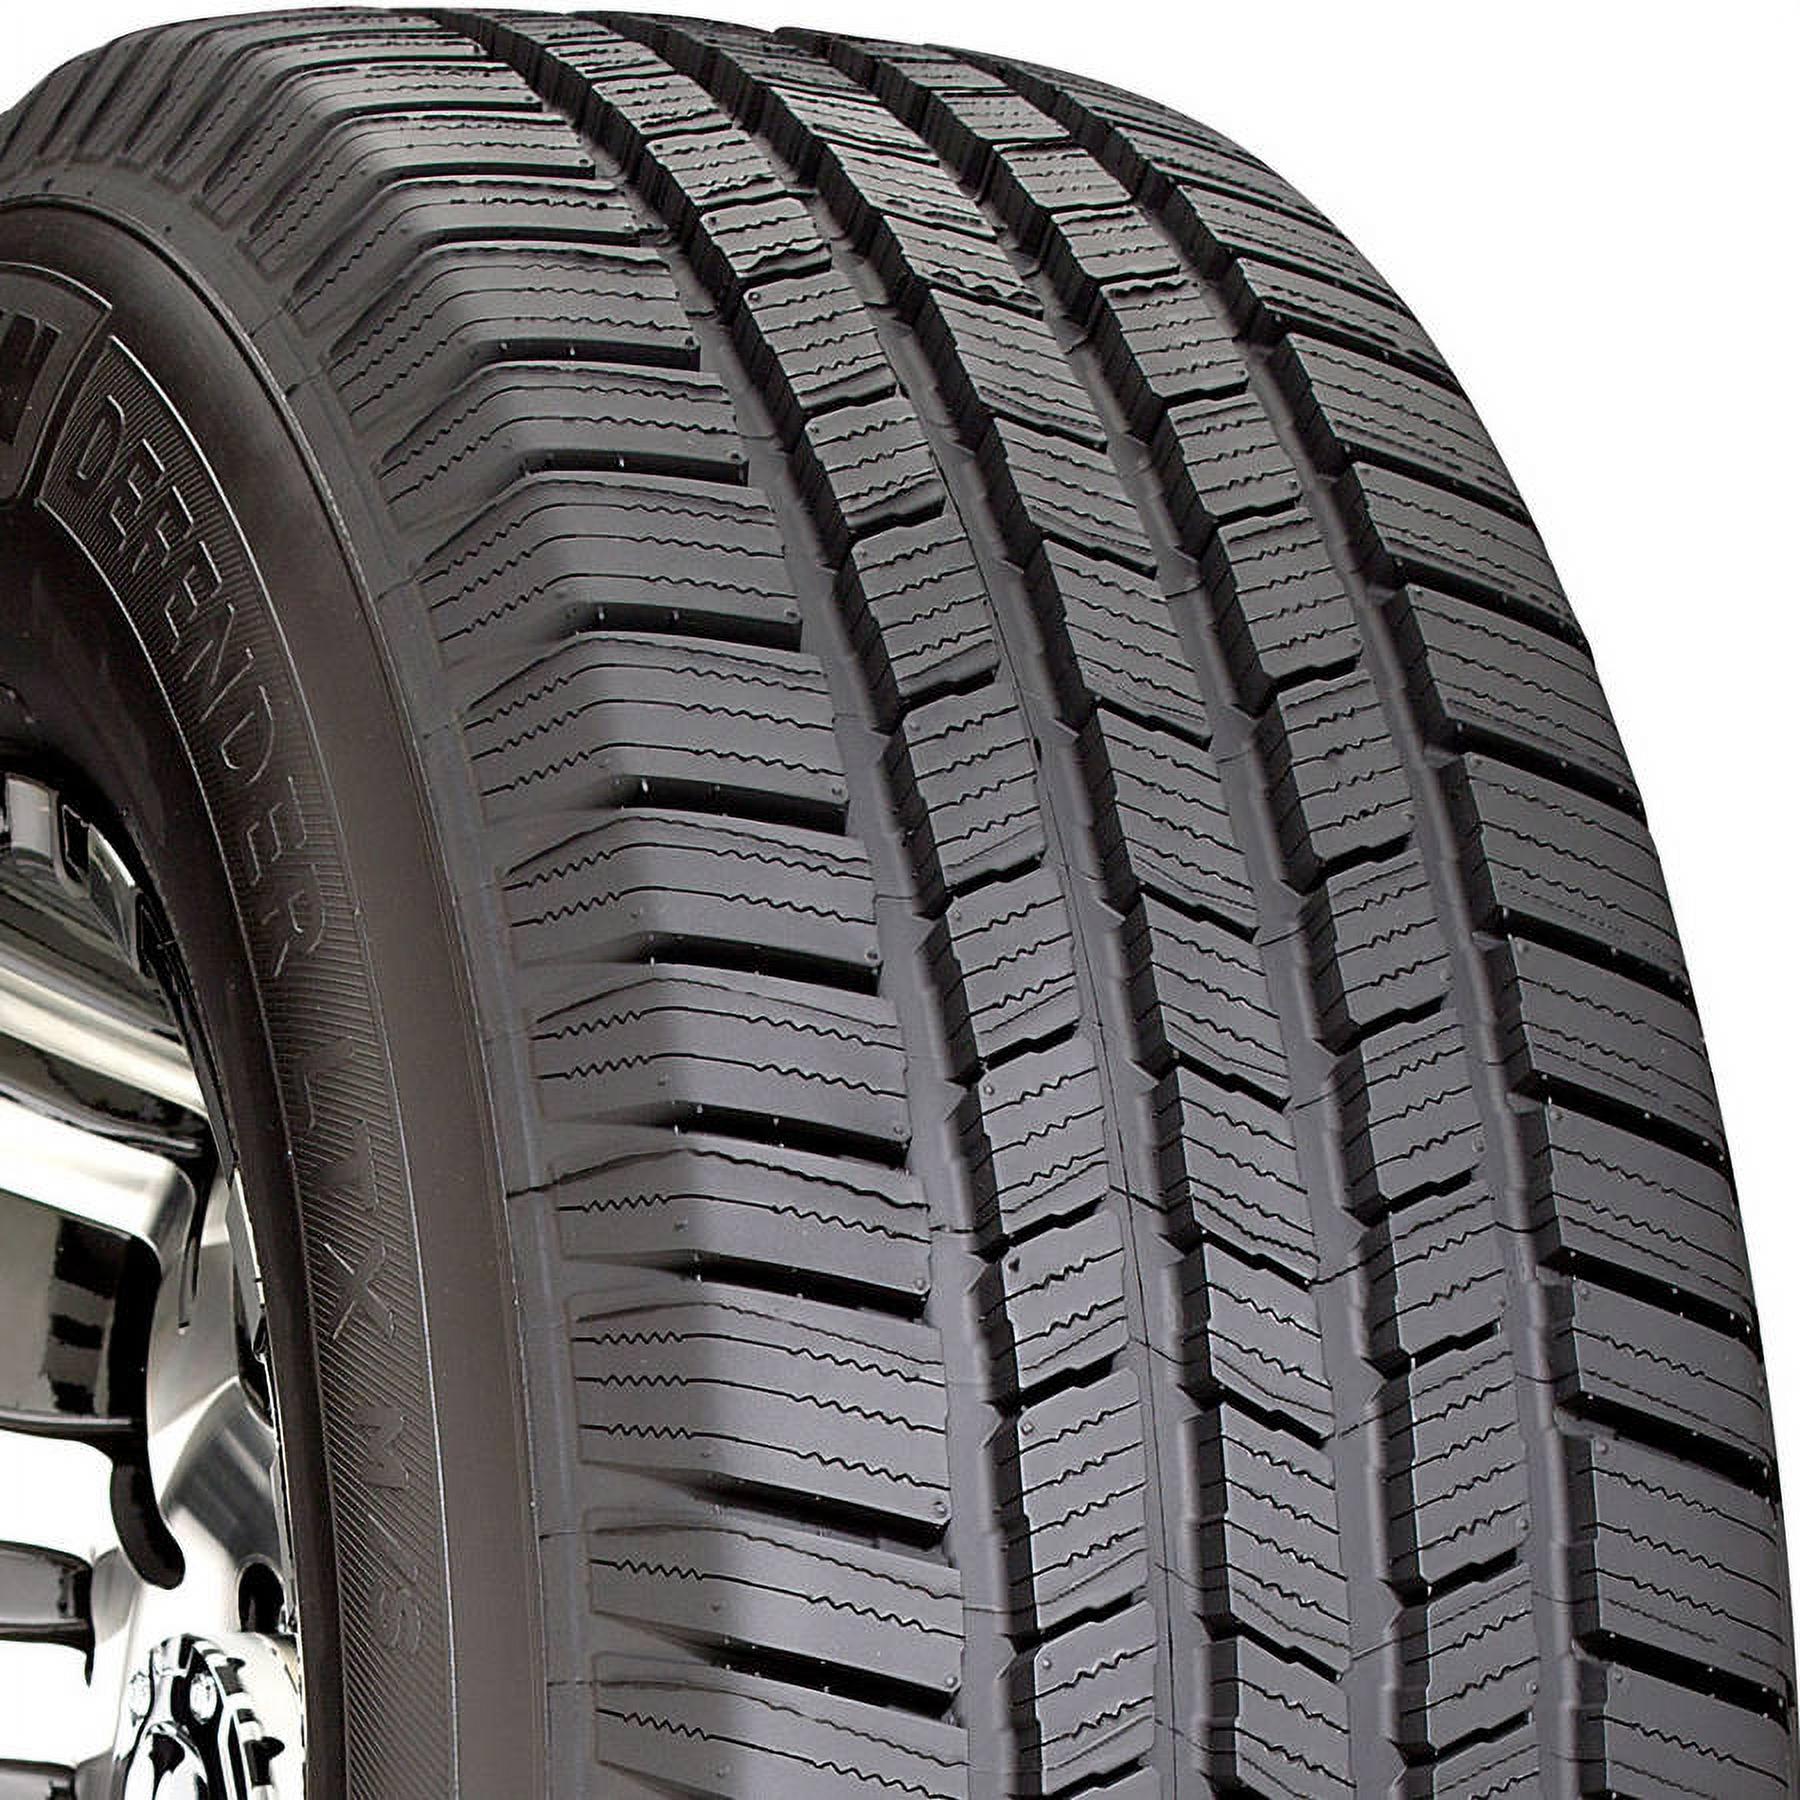 Michelin Defender LTX M/S 245/70R16 107 T Tire - image 1 of 23